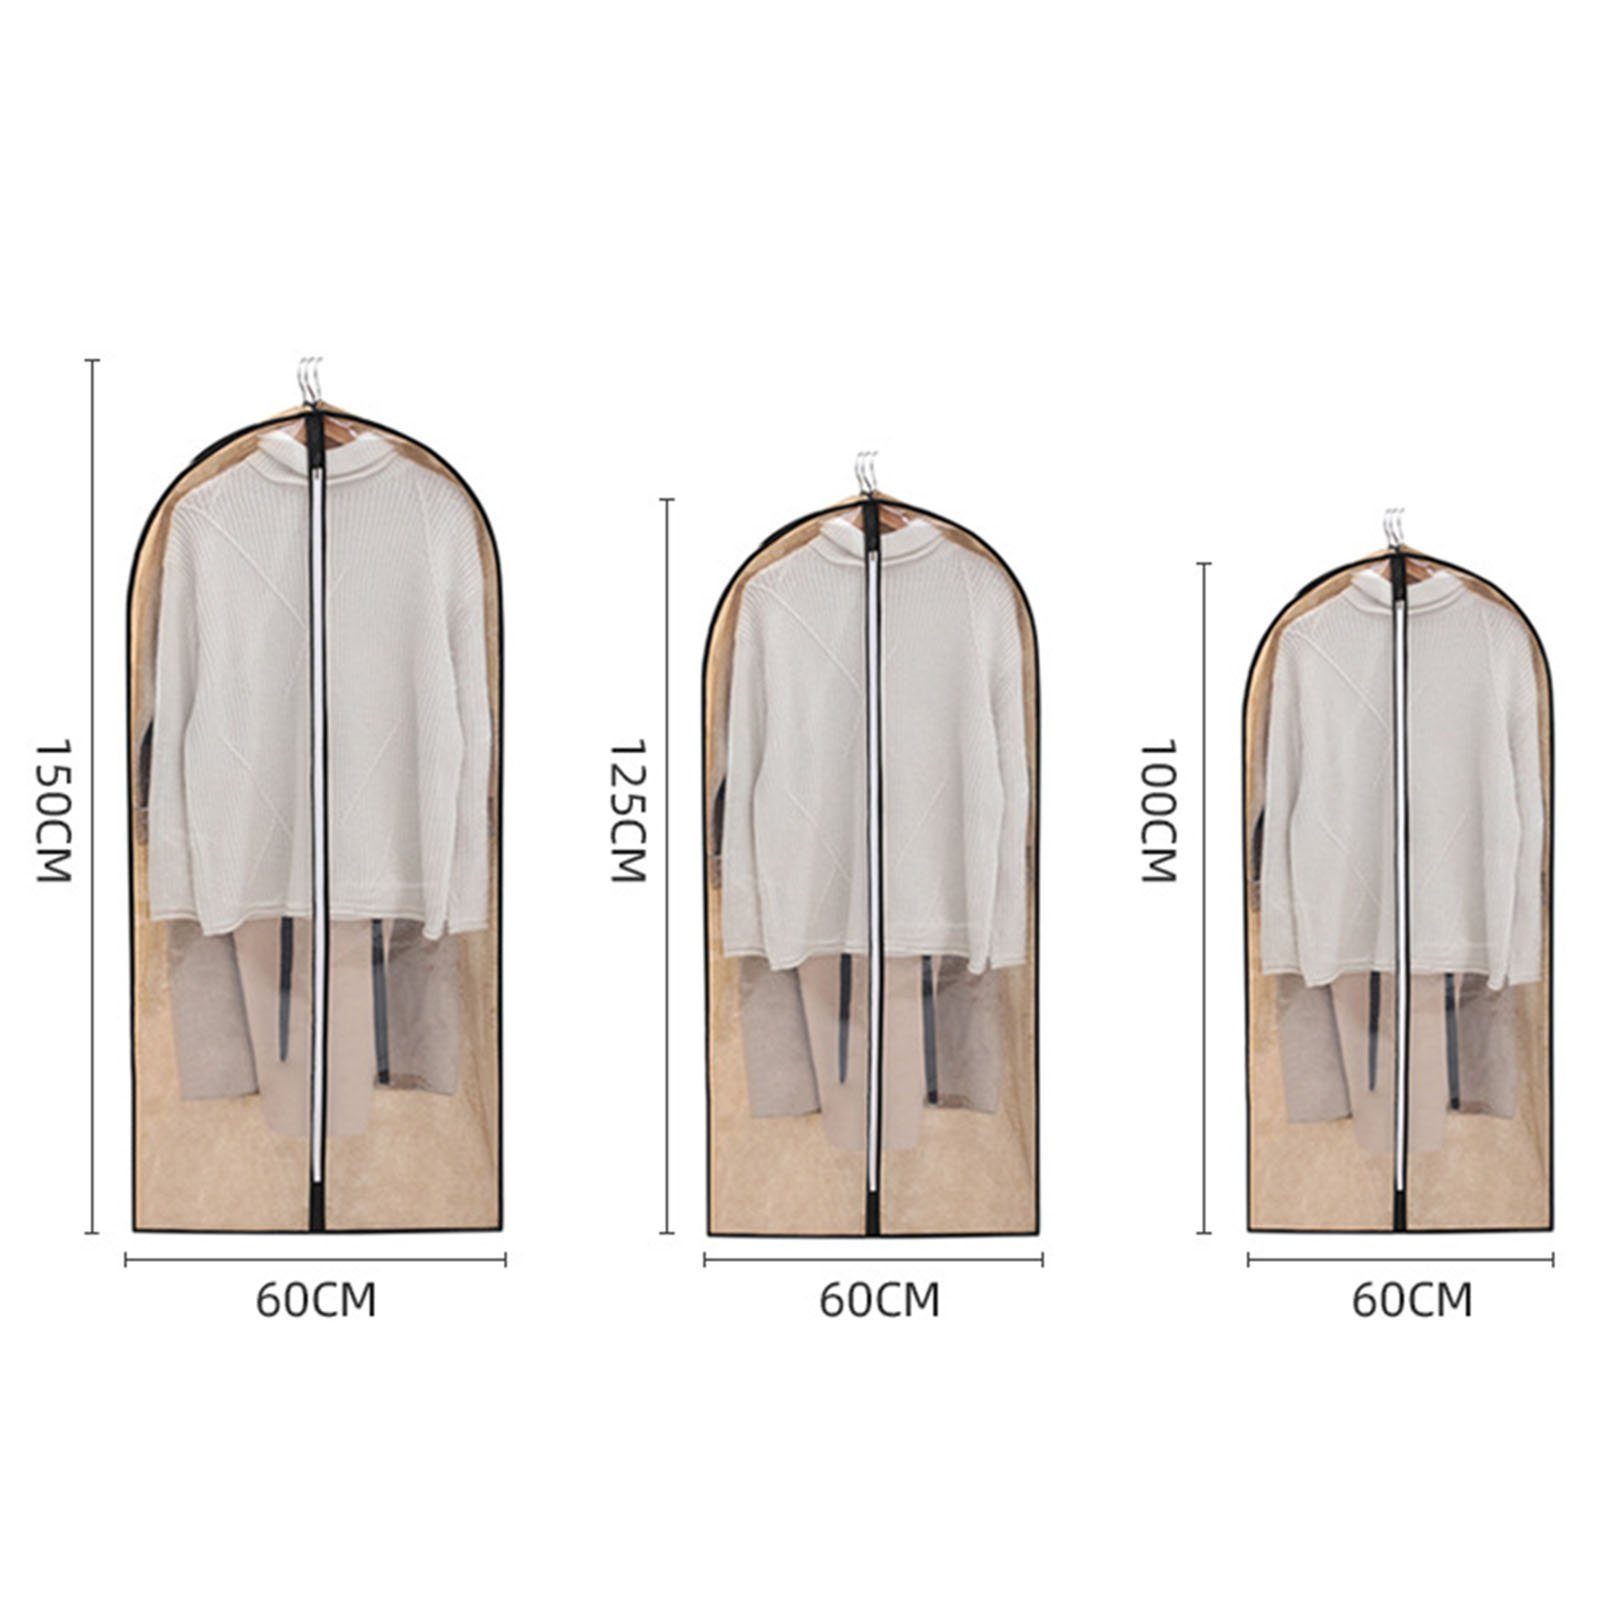 60cm x Kleidersäcke Khaki für 10cm 100cm x Aufbewahrungsanzüge Abdeckung Kleid Rutaqian Kleidung Kleidersack